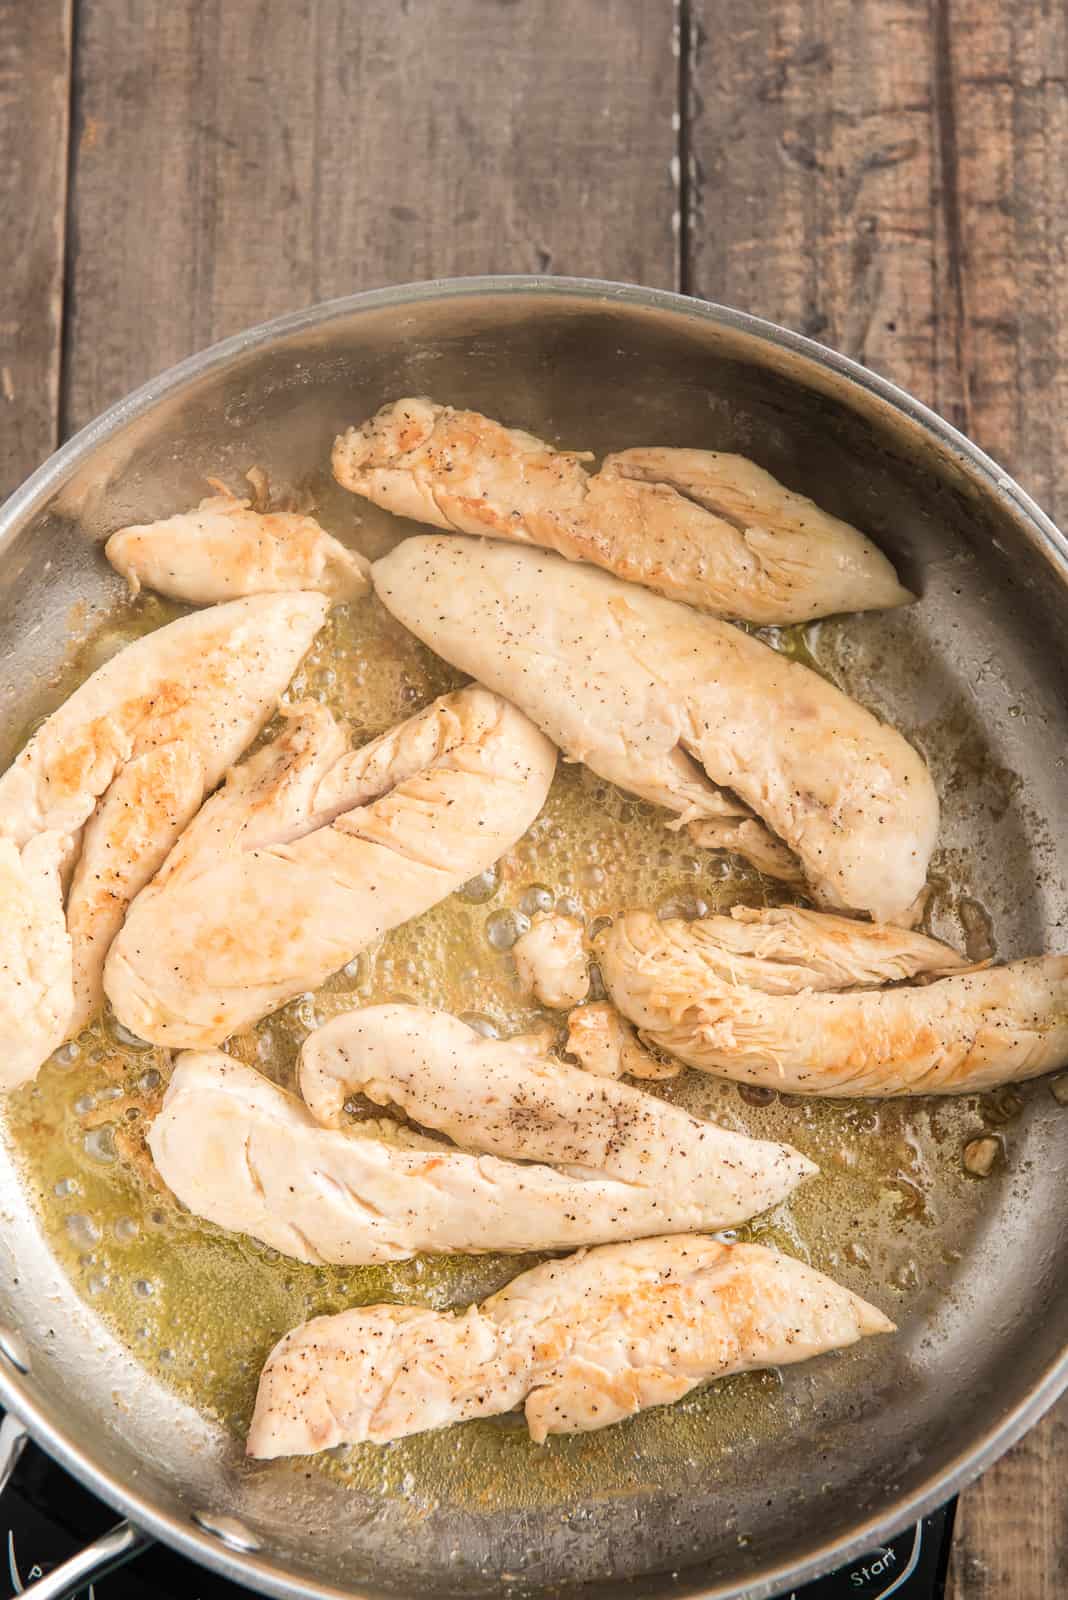 Chicken tenderloins cooking in pan.